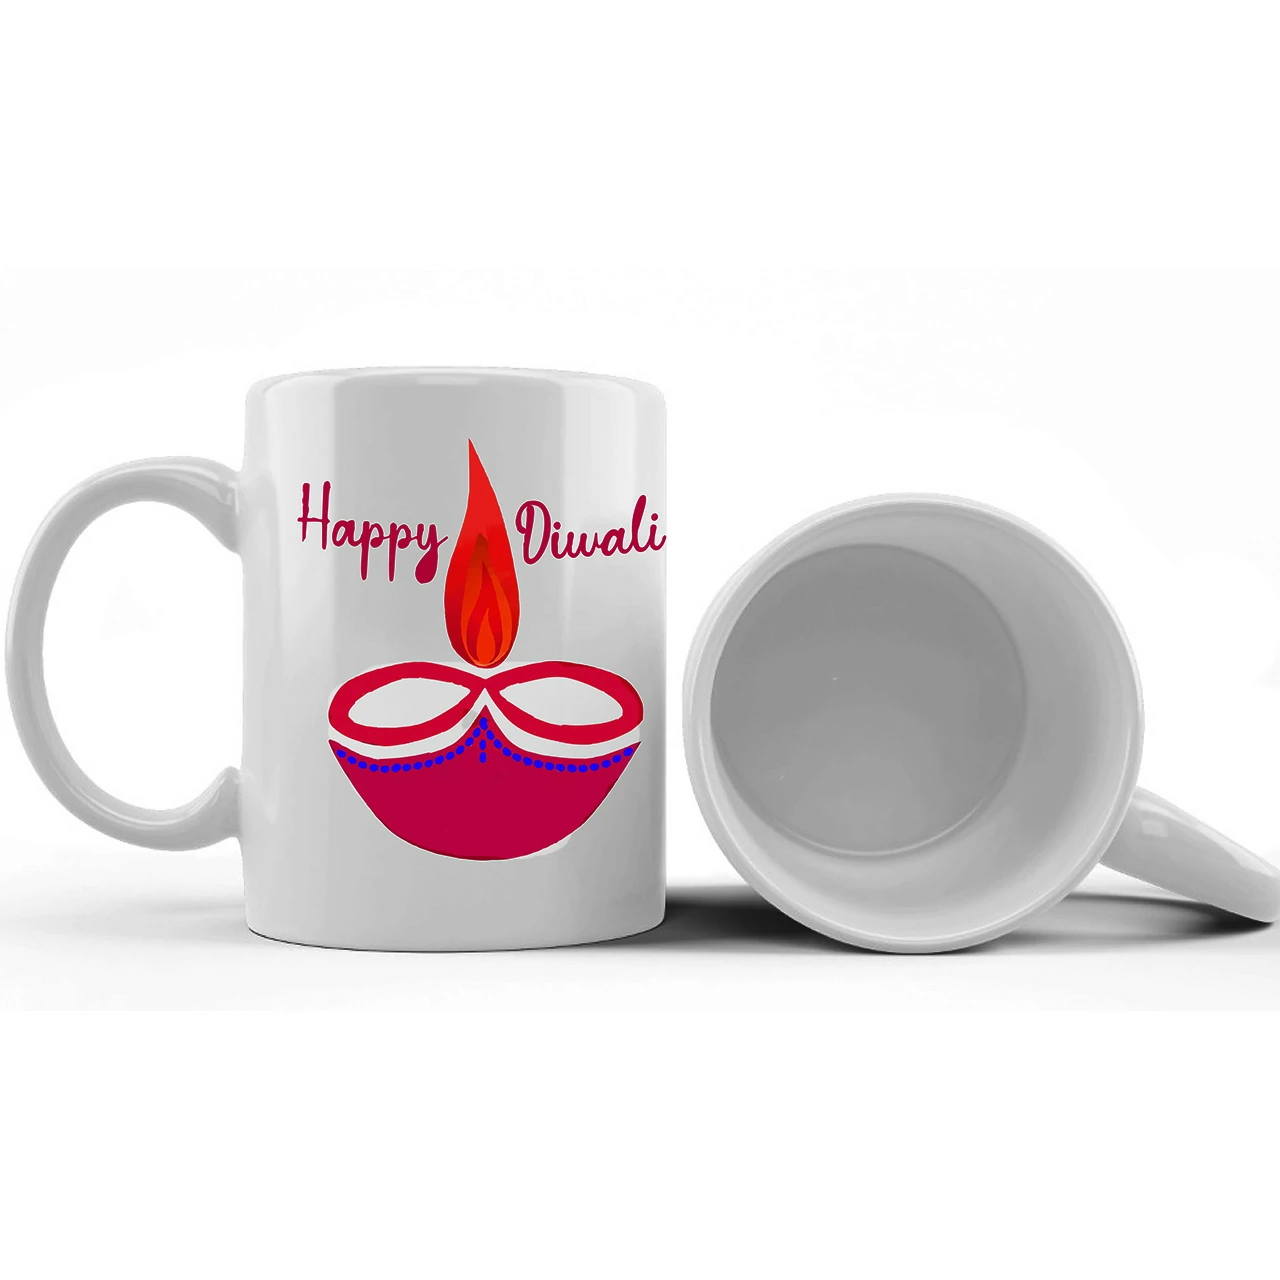 Happy Diwali Printed Ceramic Mug Gifts for | Diwali Gifts, Diwali Gift Items, Diwali Gifts for Friends, Diwali Gifts for Friends and Family, Gifts for Diwali (Design 5)